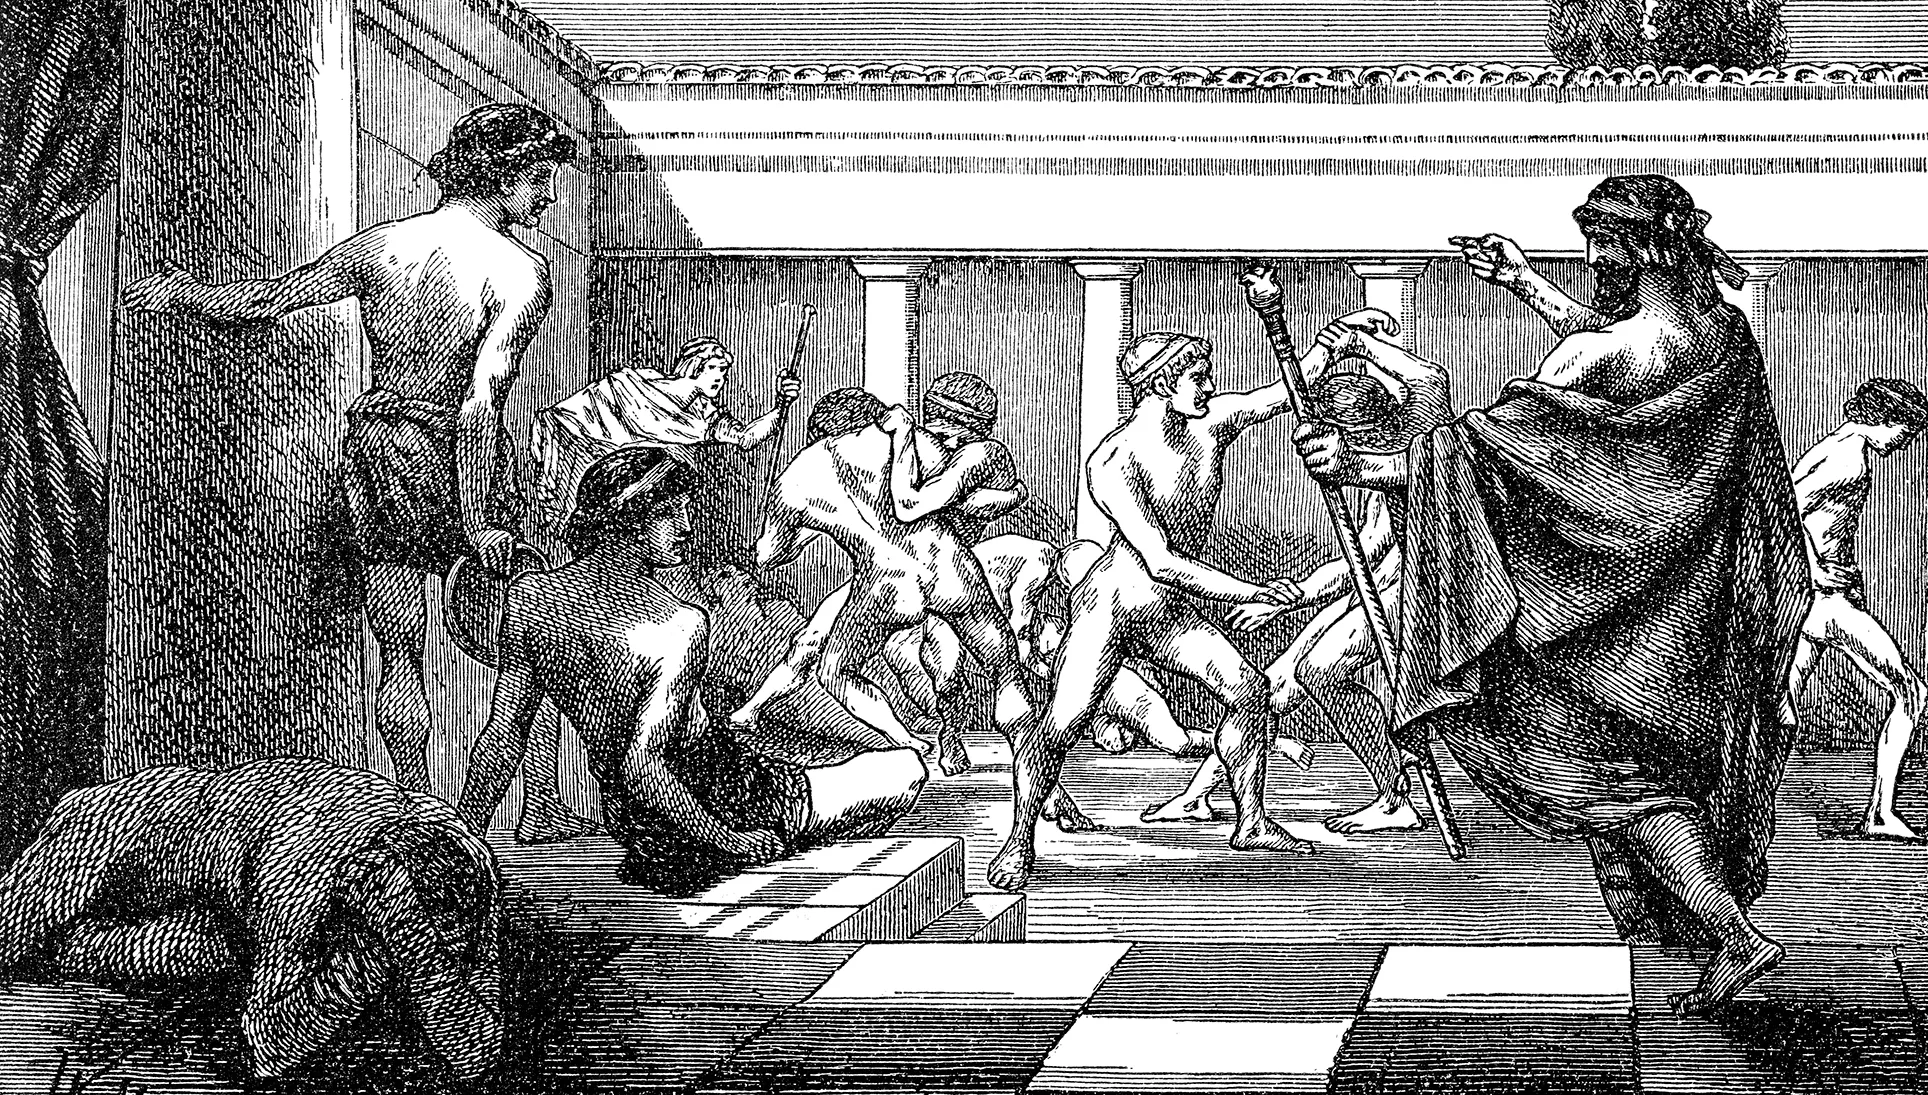 Els exercicis d'educació física eren un pilar fonamental de l'educació grega